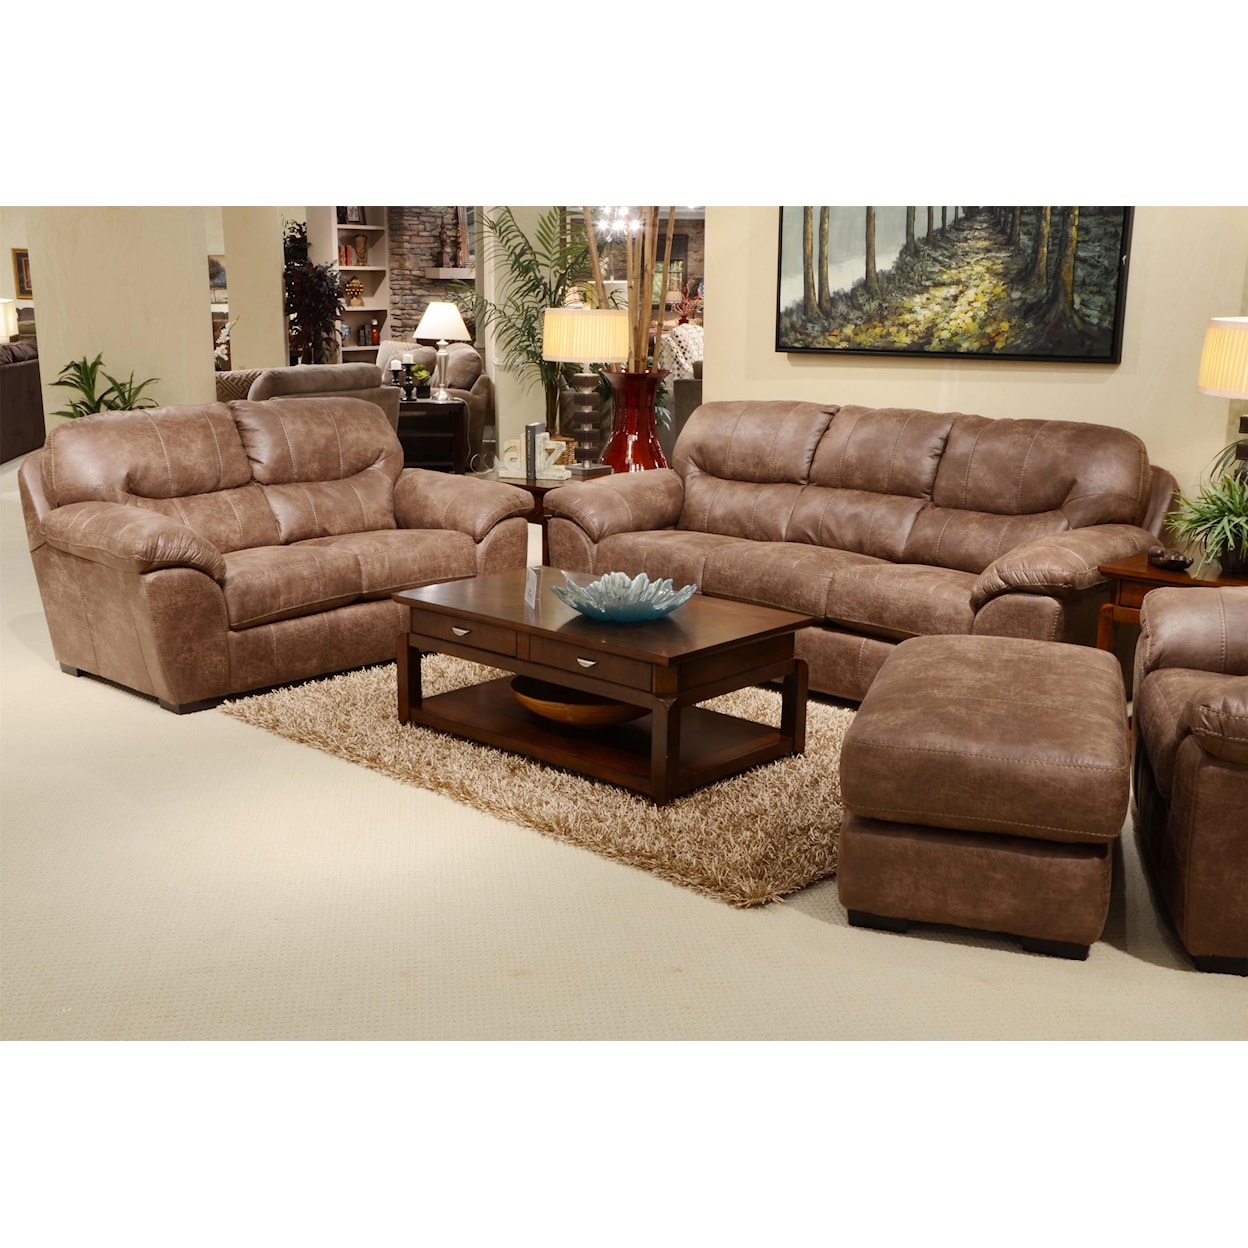 Carolina Furniture 4453 Grant Sofa